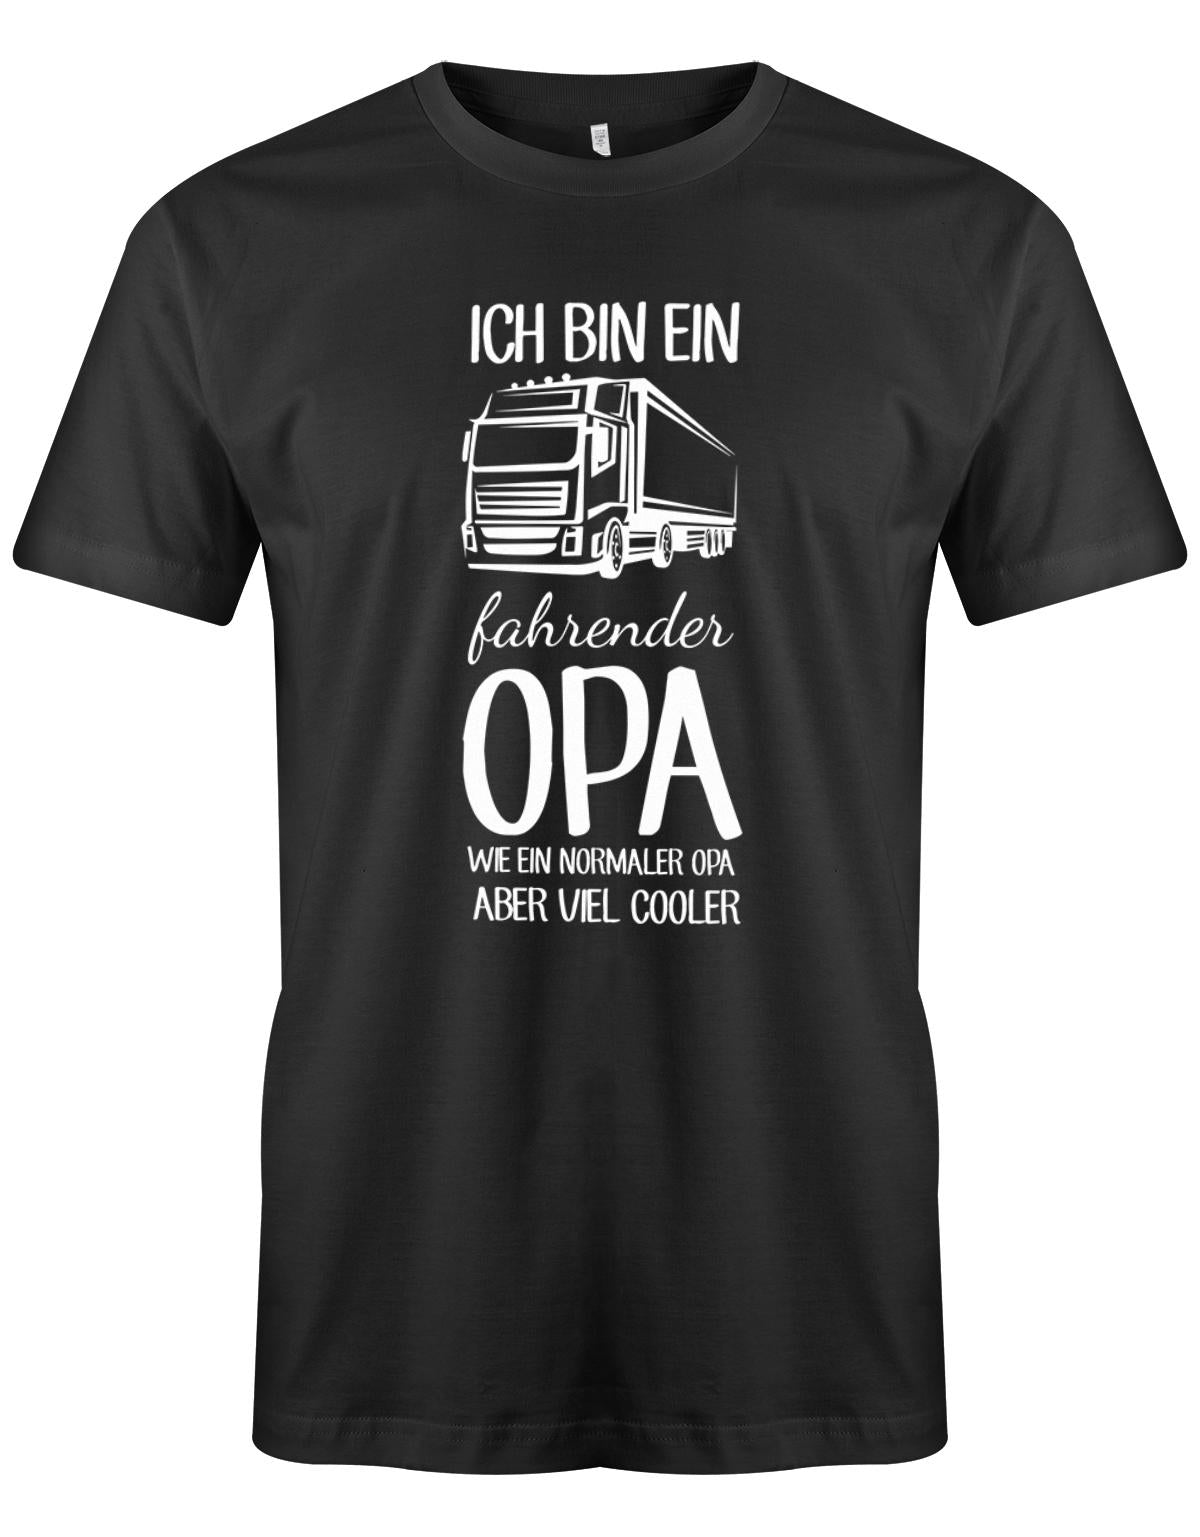 Ich bin ein LKW fahrender Opa wie ein normaler Opa aber viel cooler - Kraftfahrer - Herren T-Shirt SChwarz